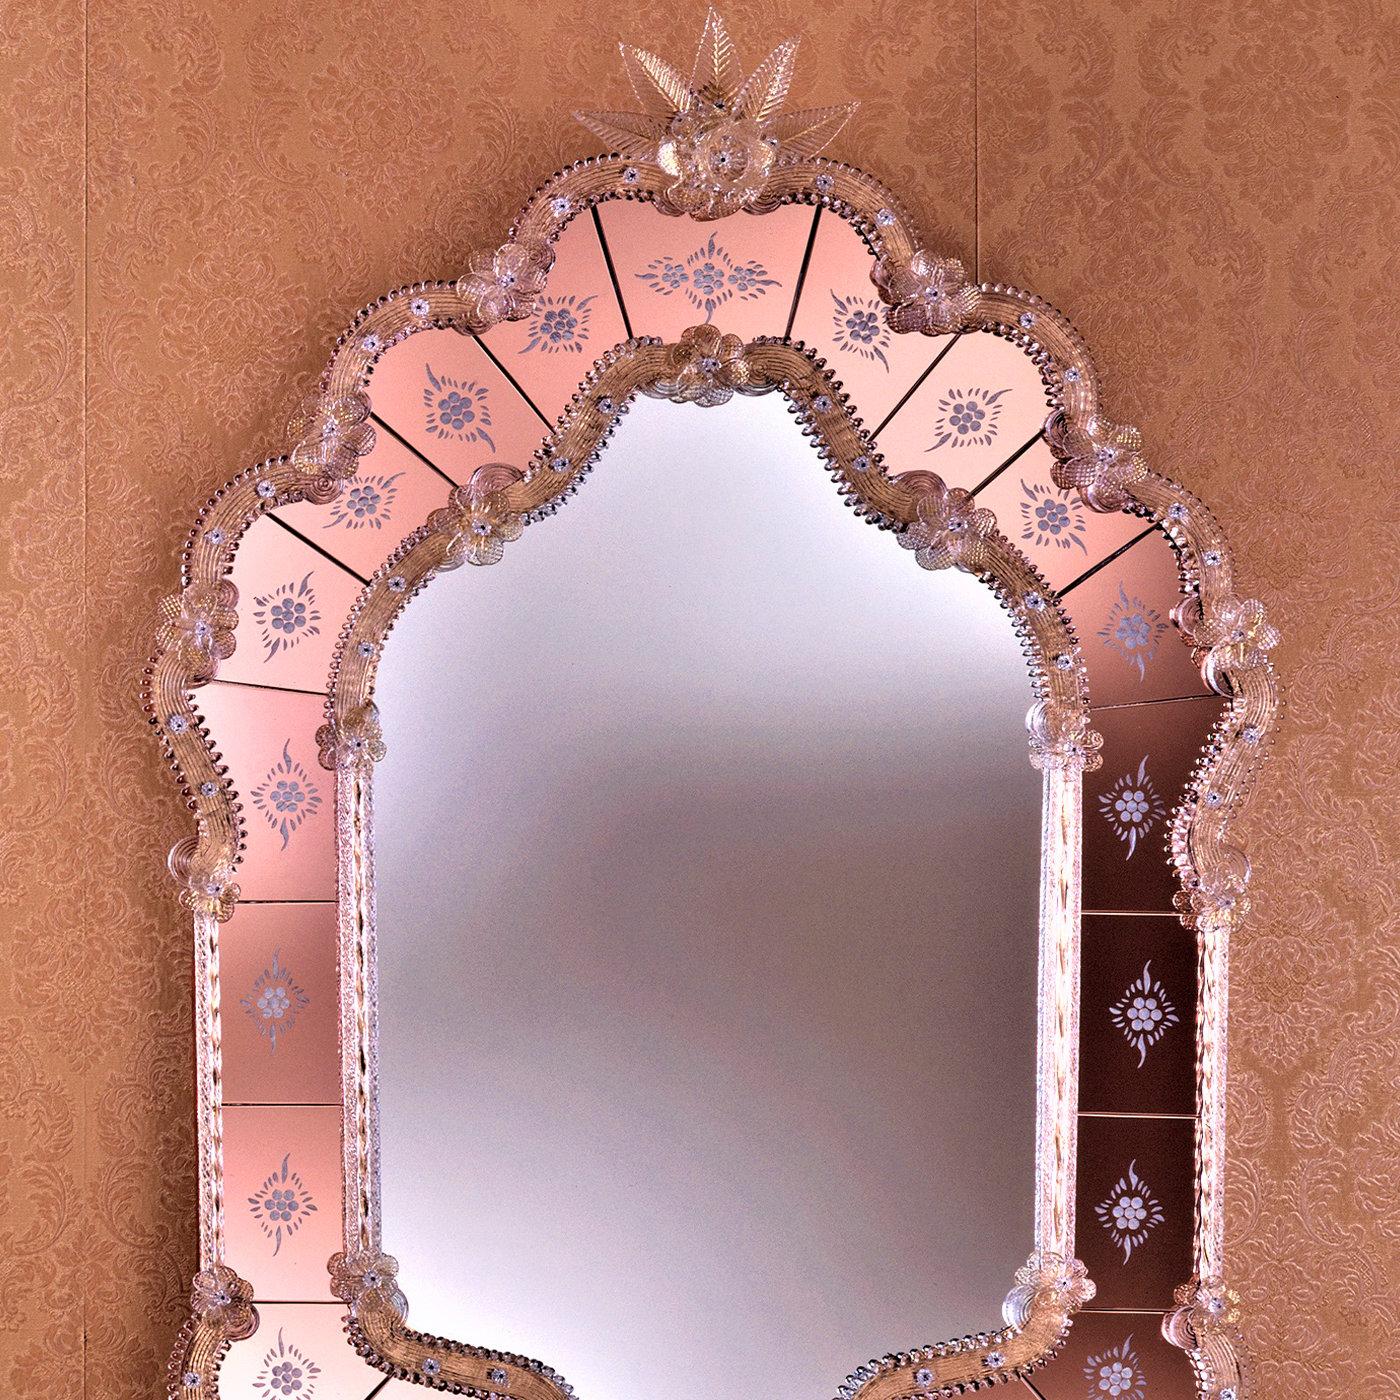 Dieser außergewöhnliche Spiegel, der von venezianischen Glasmachermeistern handgefertigt wurde, ist kühn und doch feminin. Er ist ein prächtiger Blickfang in klassischen oder eklektischen Einrichtungen. Der eingerückte Rahmen in goldenem Kristall